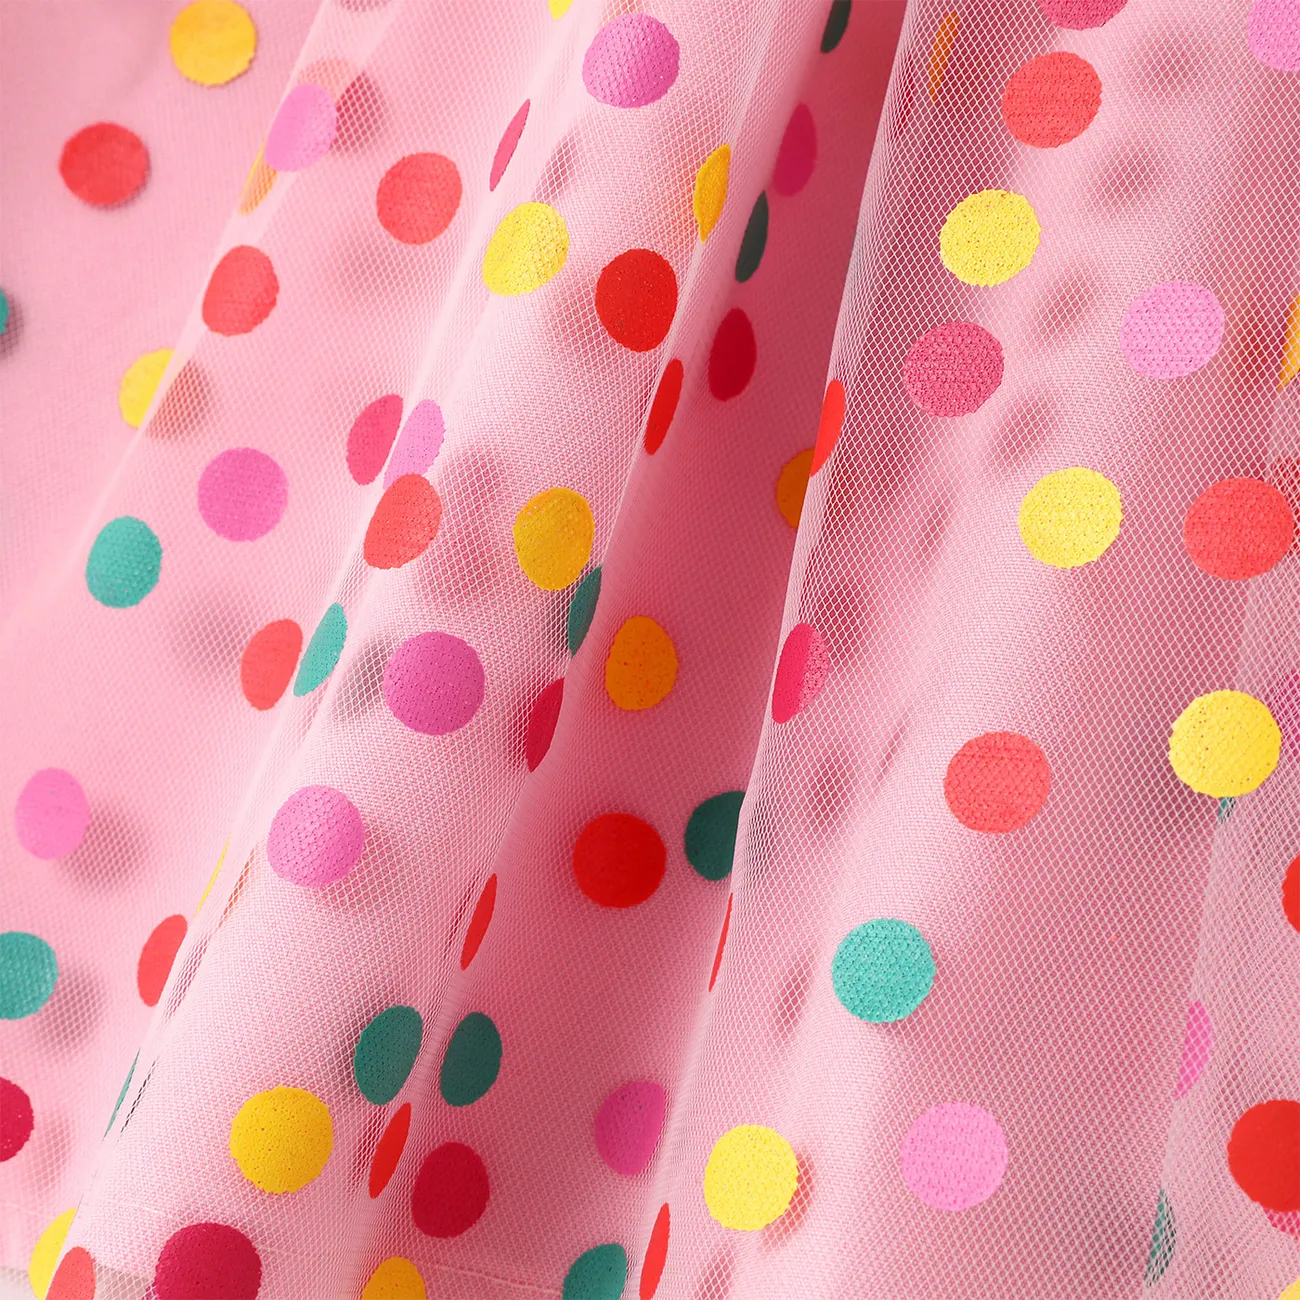 Helfer auf vier Pfoten Kleinkinder Mädchen Puffärmel Elegant Kleider rosa big image 1